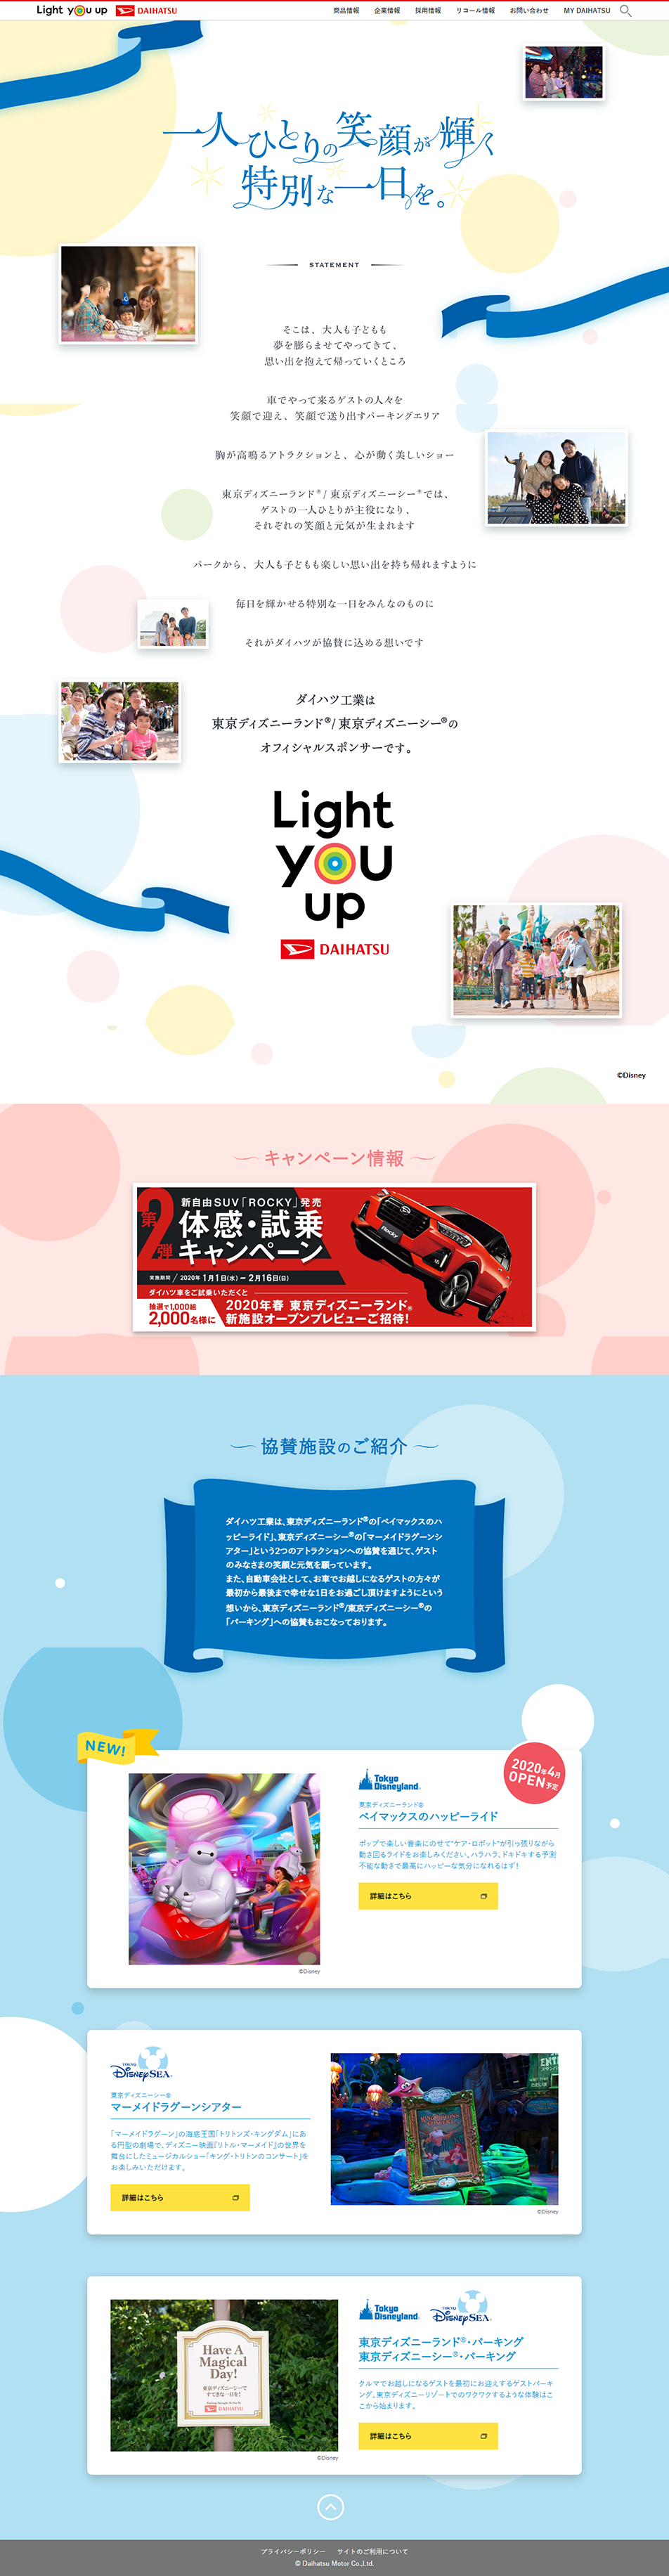 ランディングページ Lp 東京ディズニーランド 東京ディズニーシー オフィシャルスポンサー 旅行 アウトドア 自社サイト